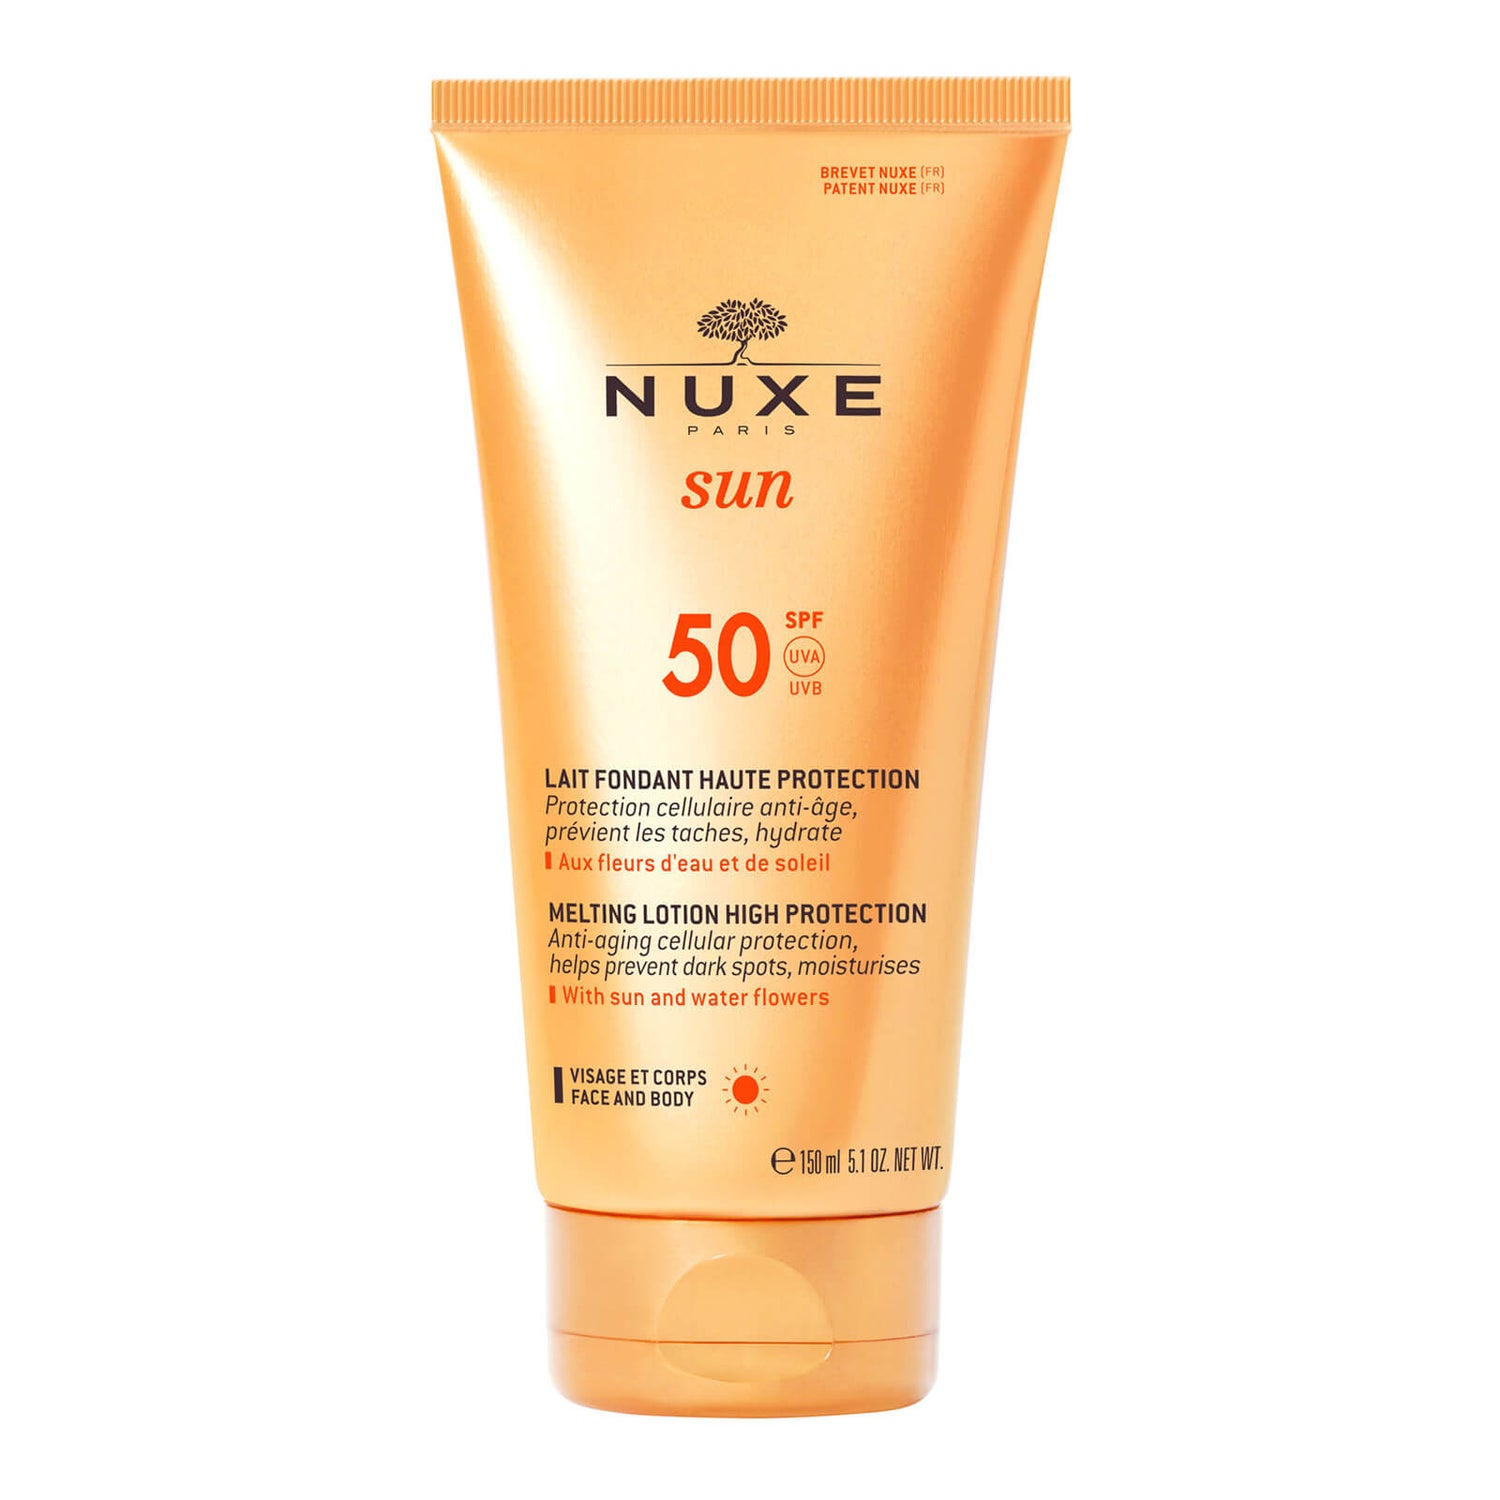 Lait Fondant Haute Protection SPF 50, NUXE Sun 150 ml